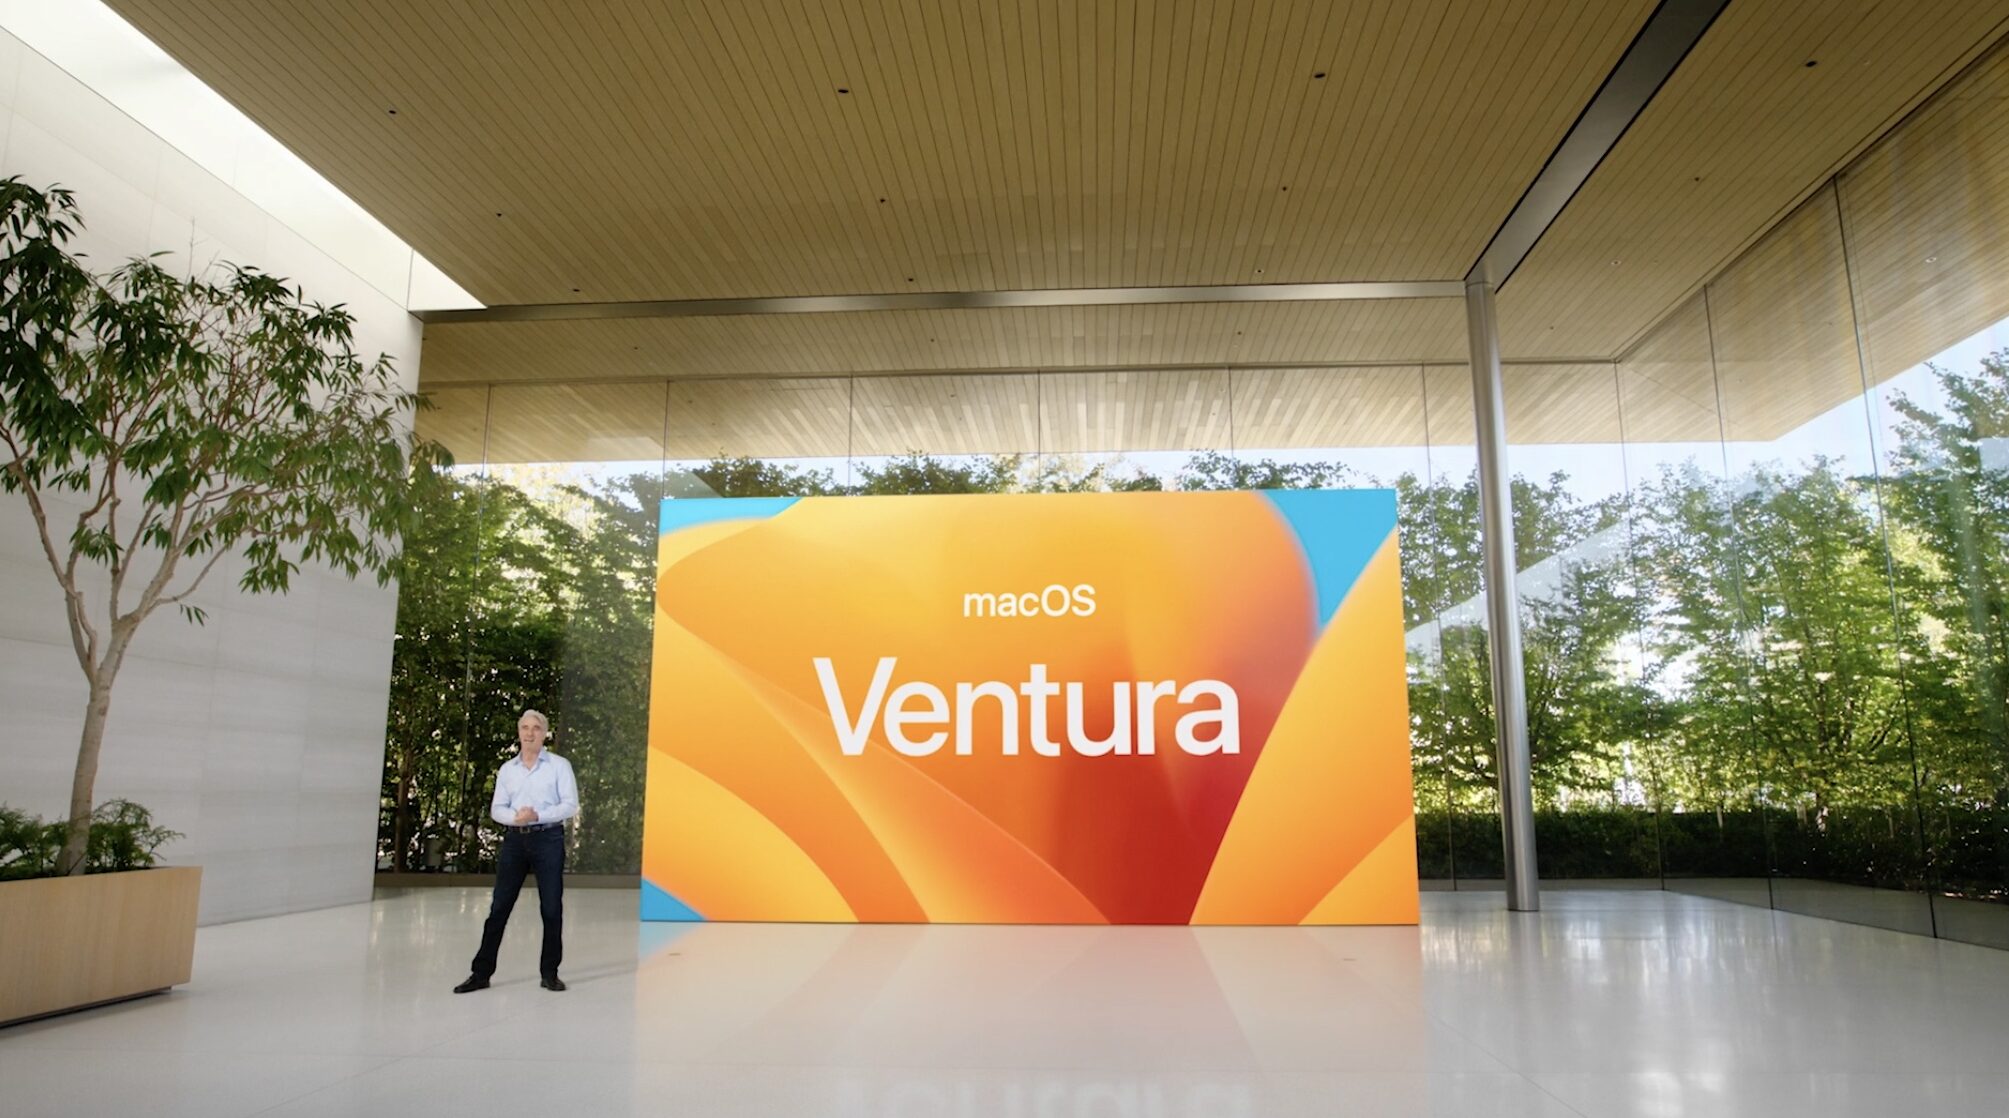 macOS Ventura slide from WWDC22